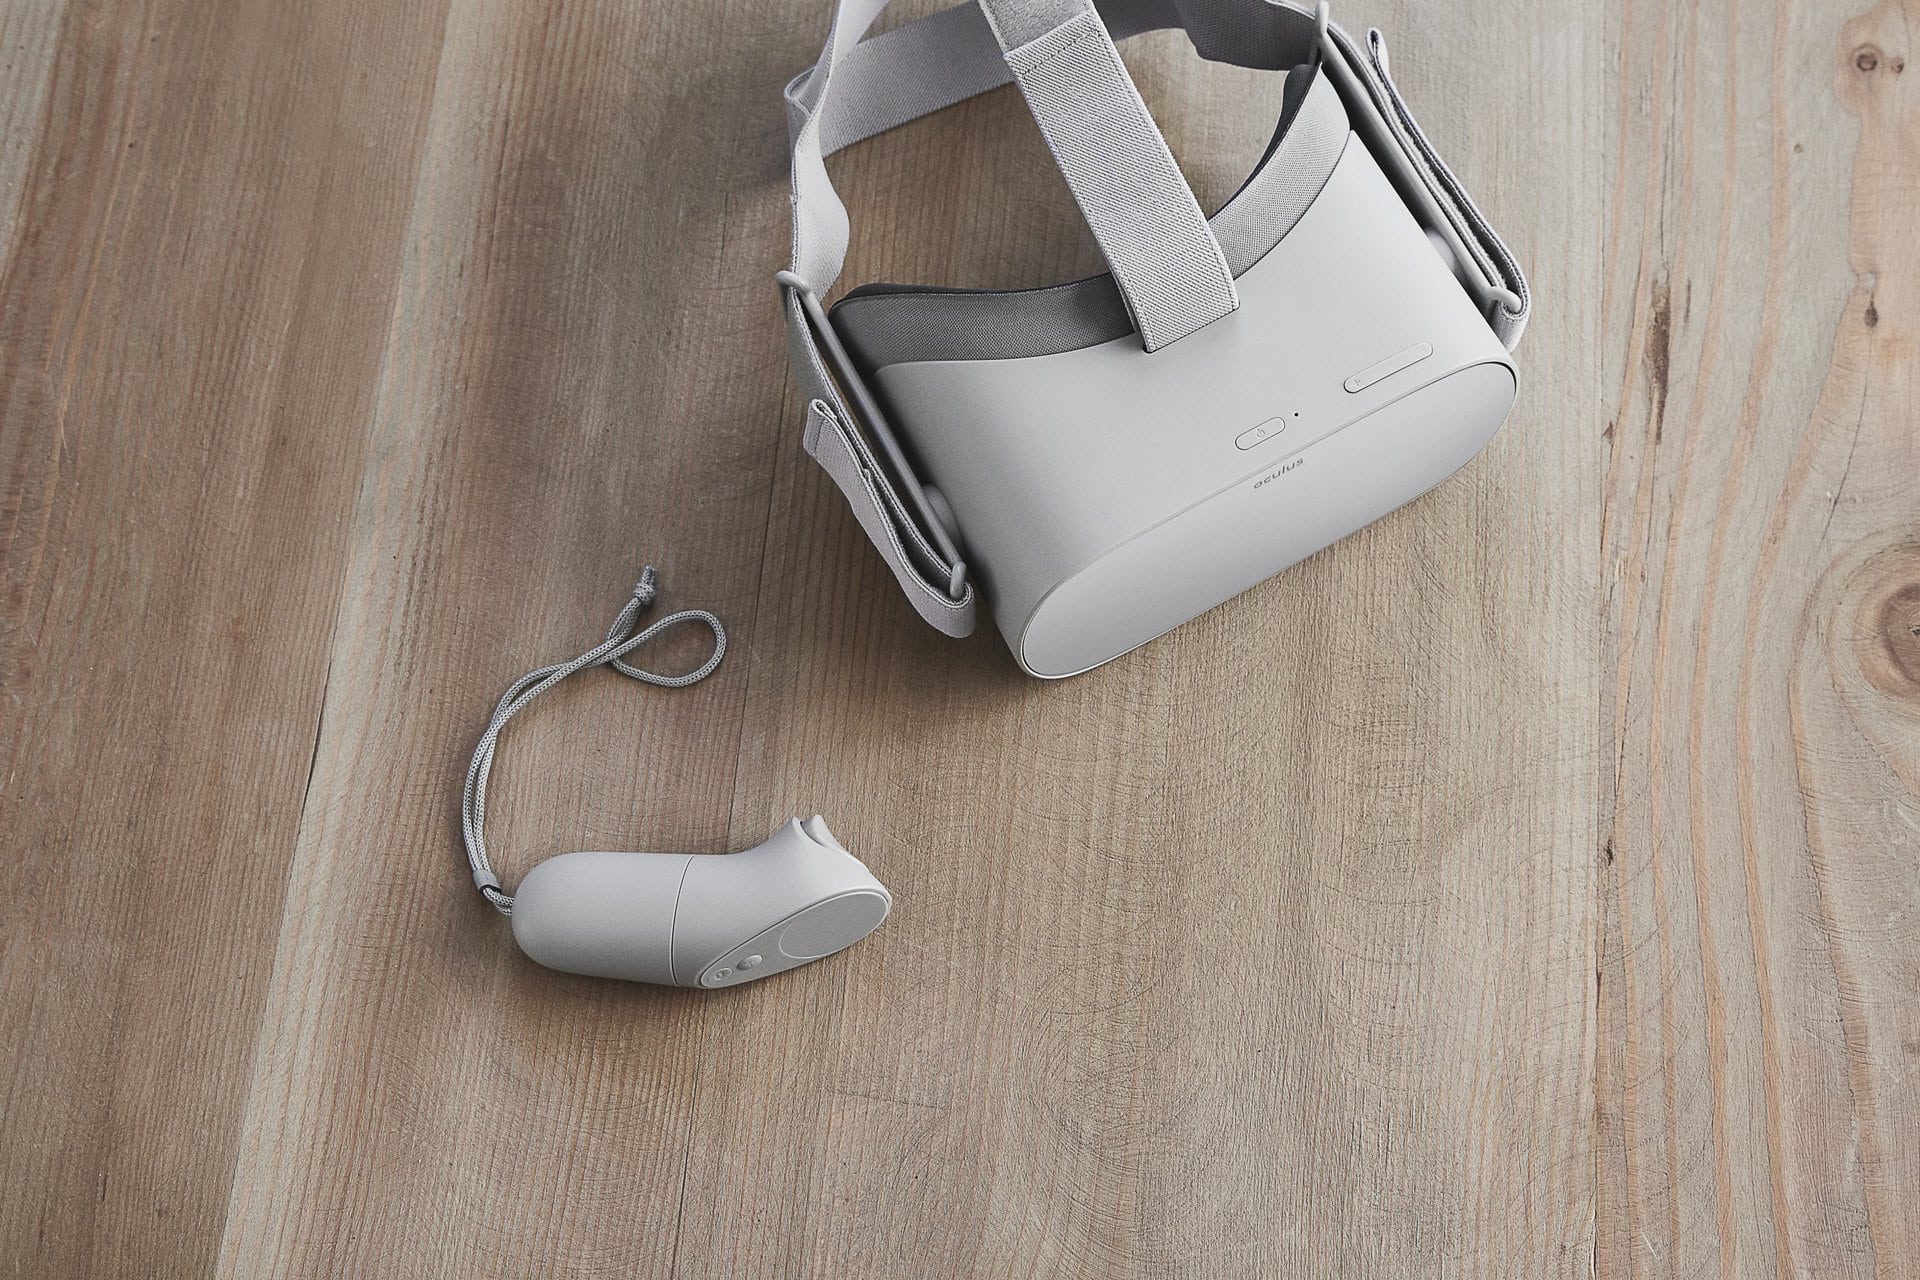 Oculus GO for VR porn